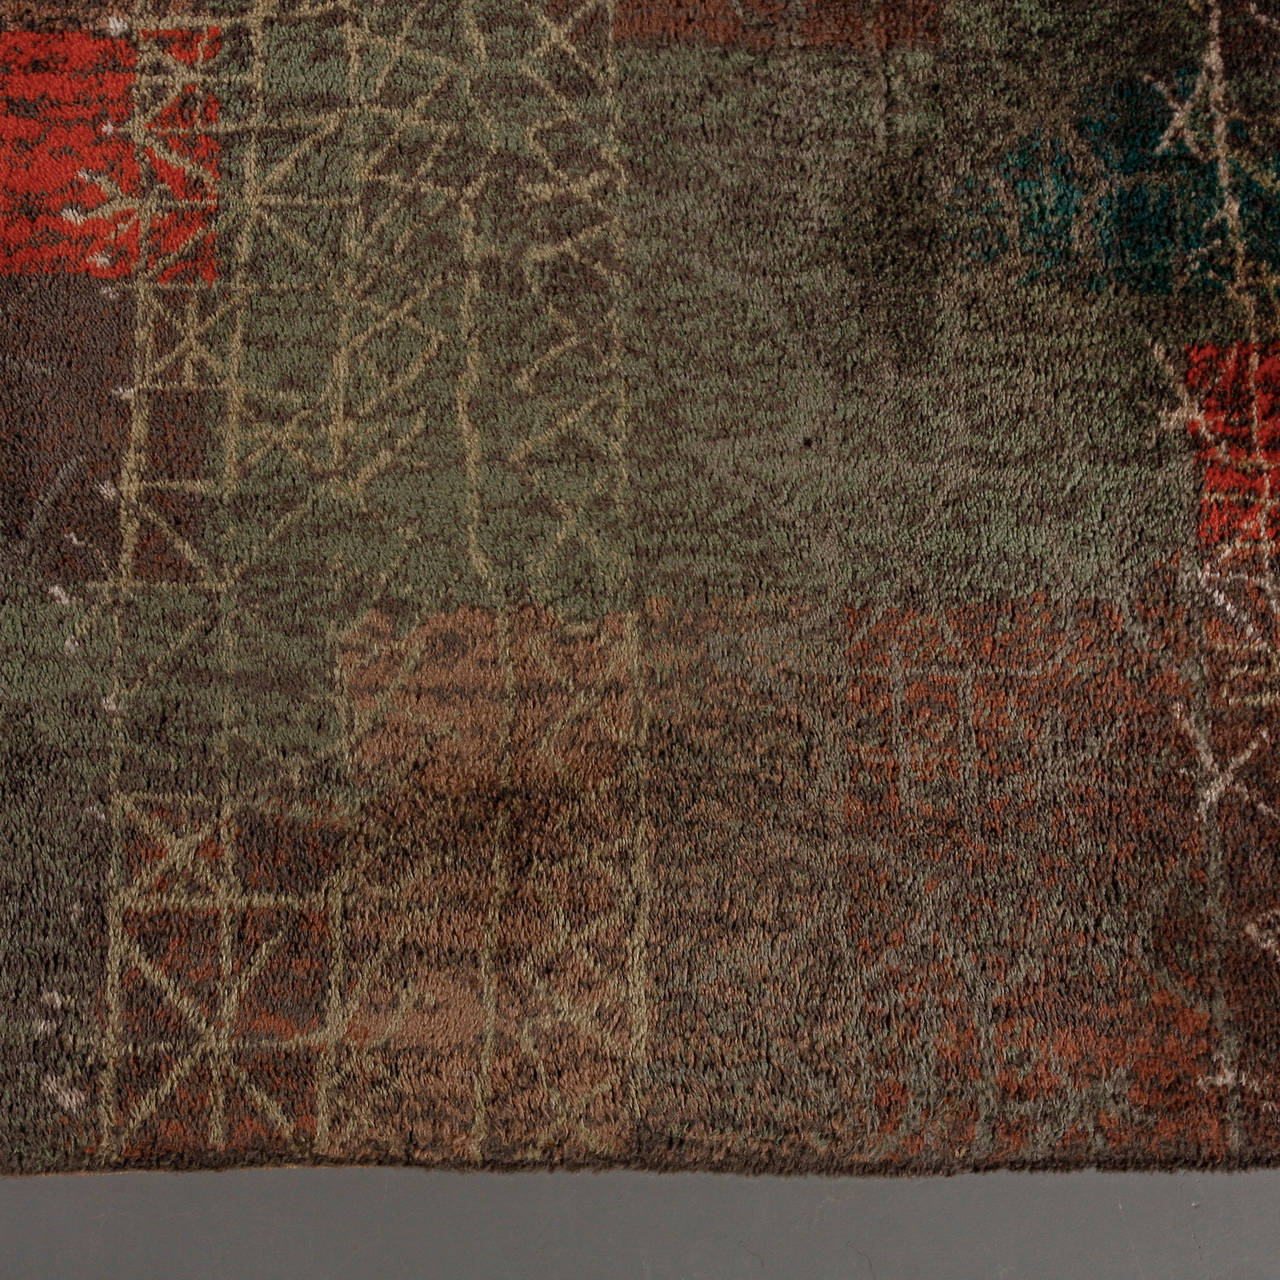 Danish Paul Klee Carpet